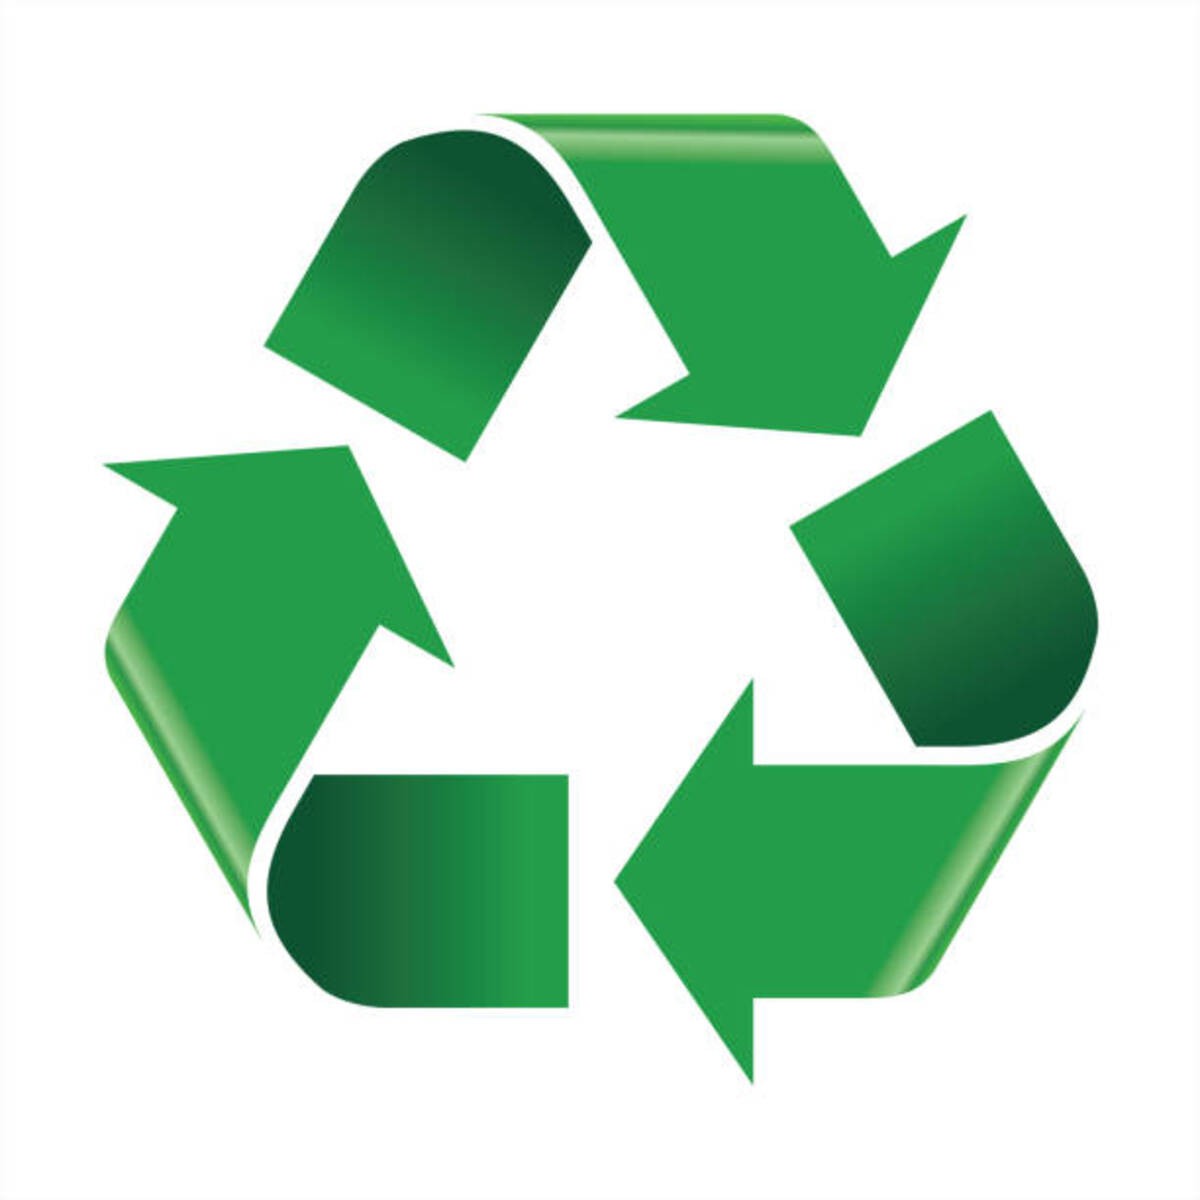 Etude sur l'utilisation de plastique recyclé en Occitanie